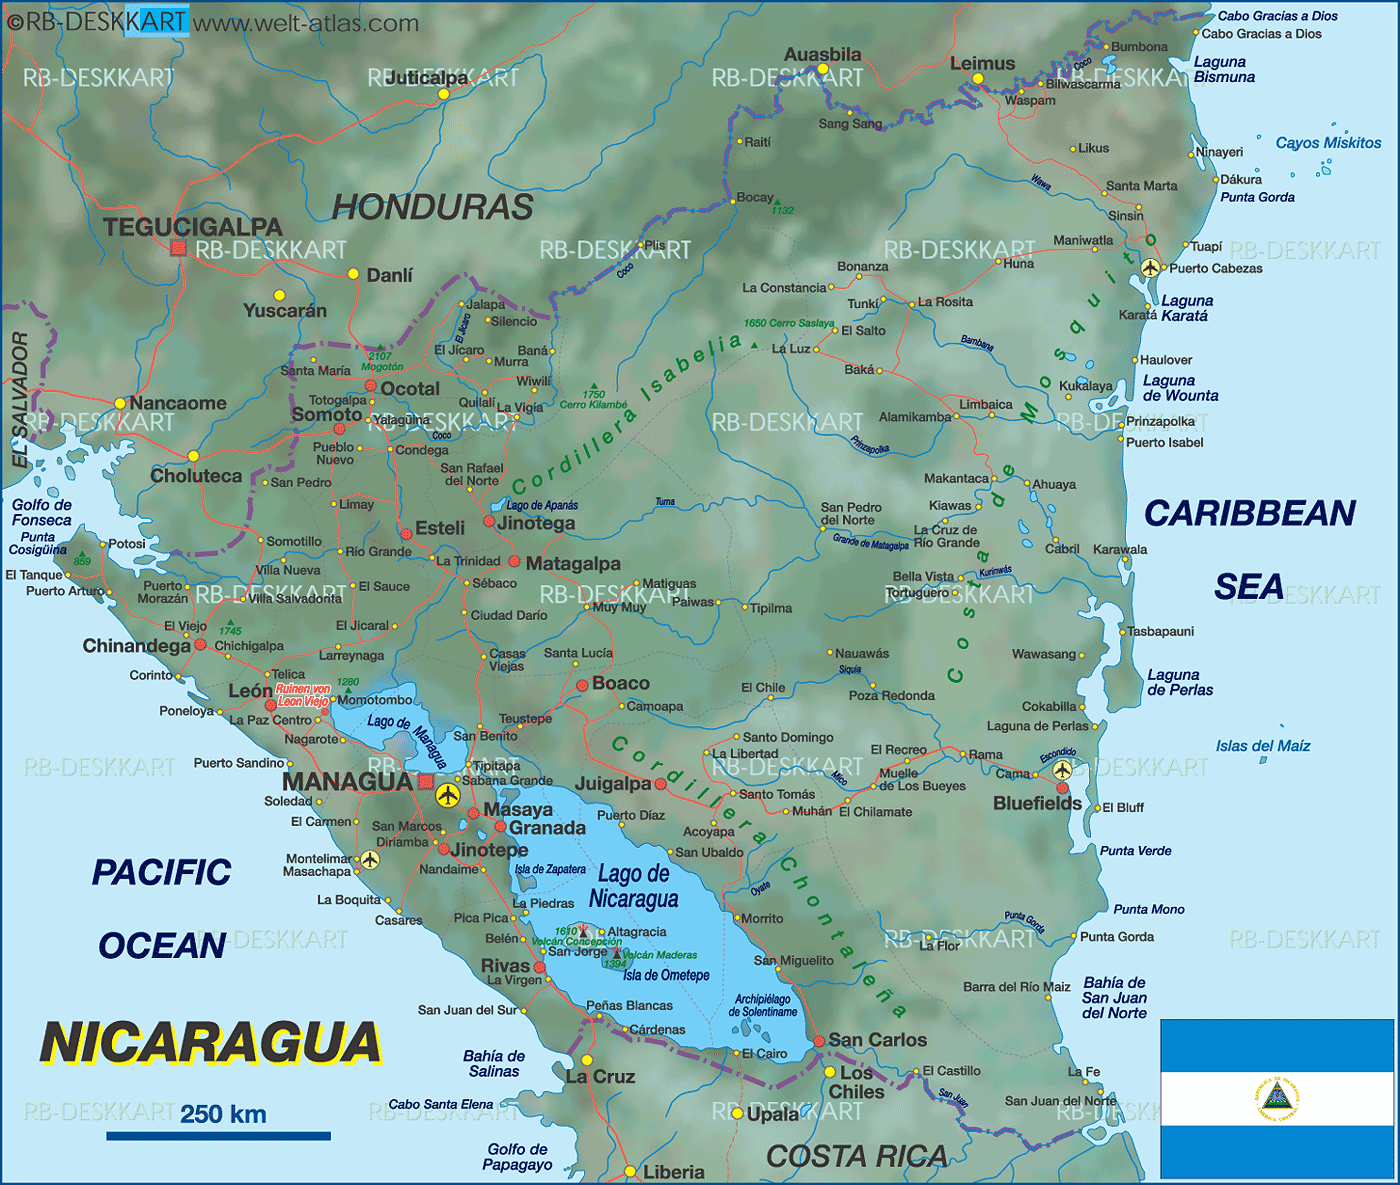 Karte von Nicaragua (Land / Staat)